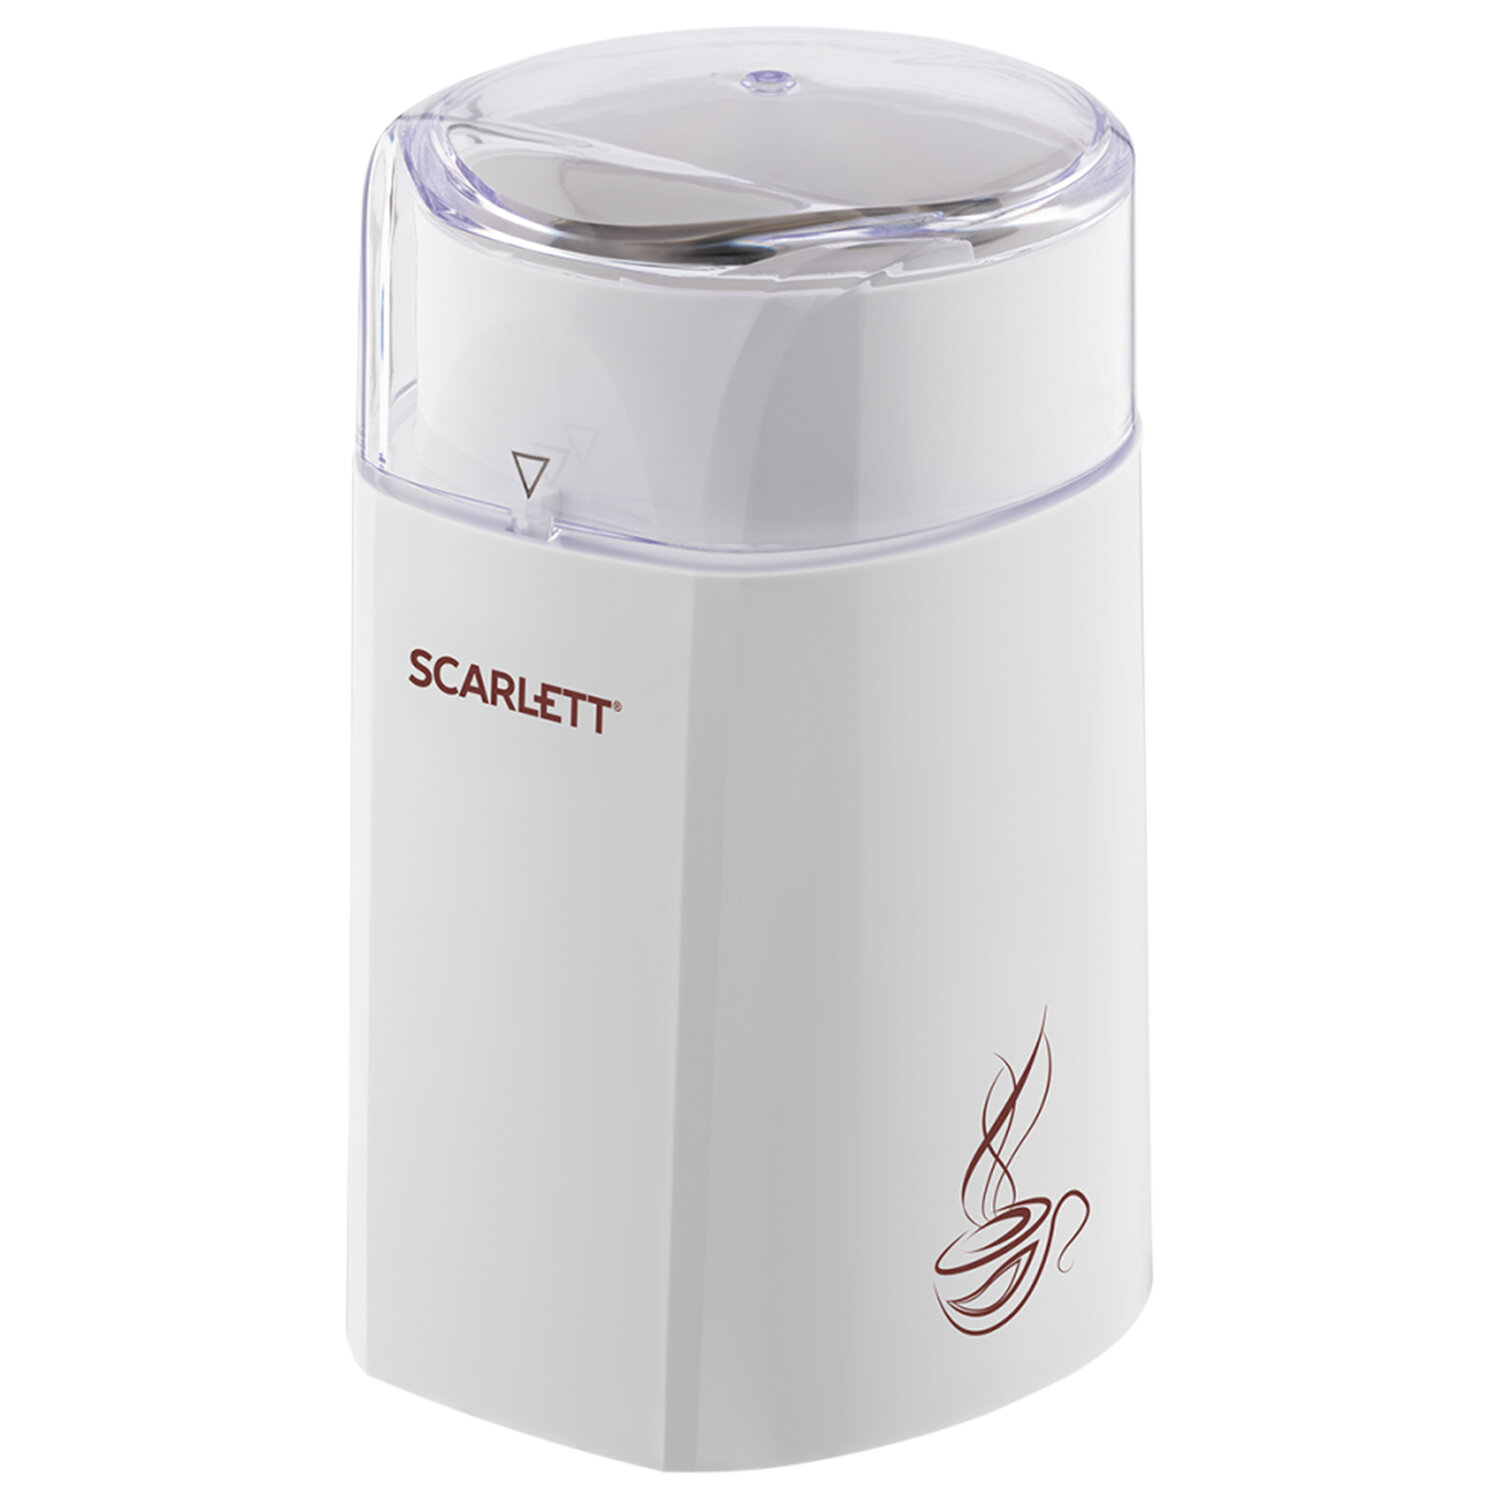 Scarlett  SCARLETT SC-CG44506